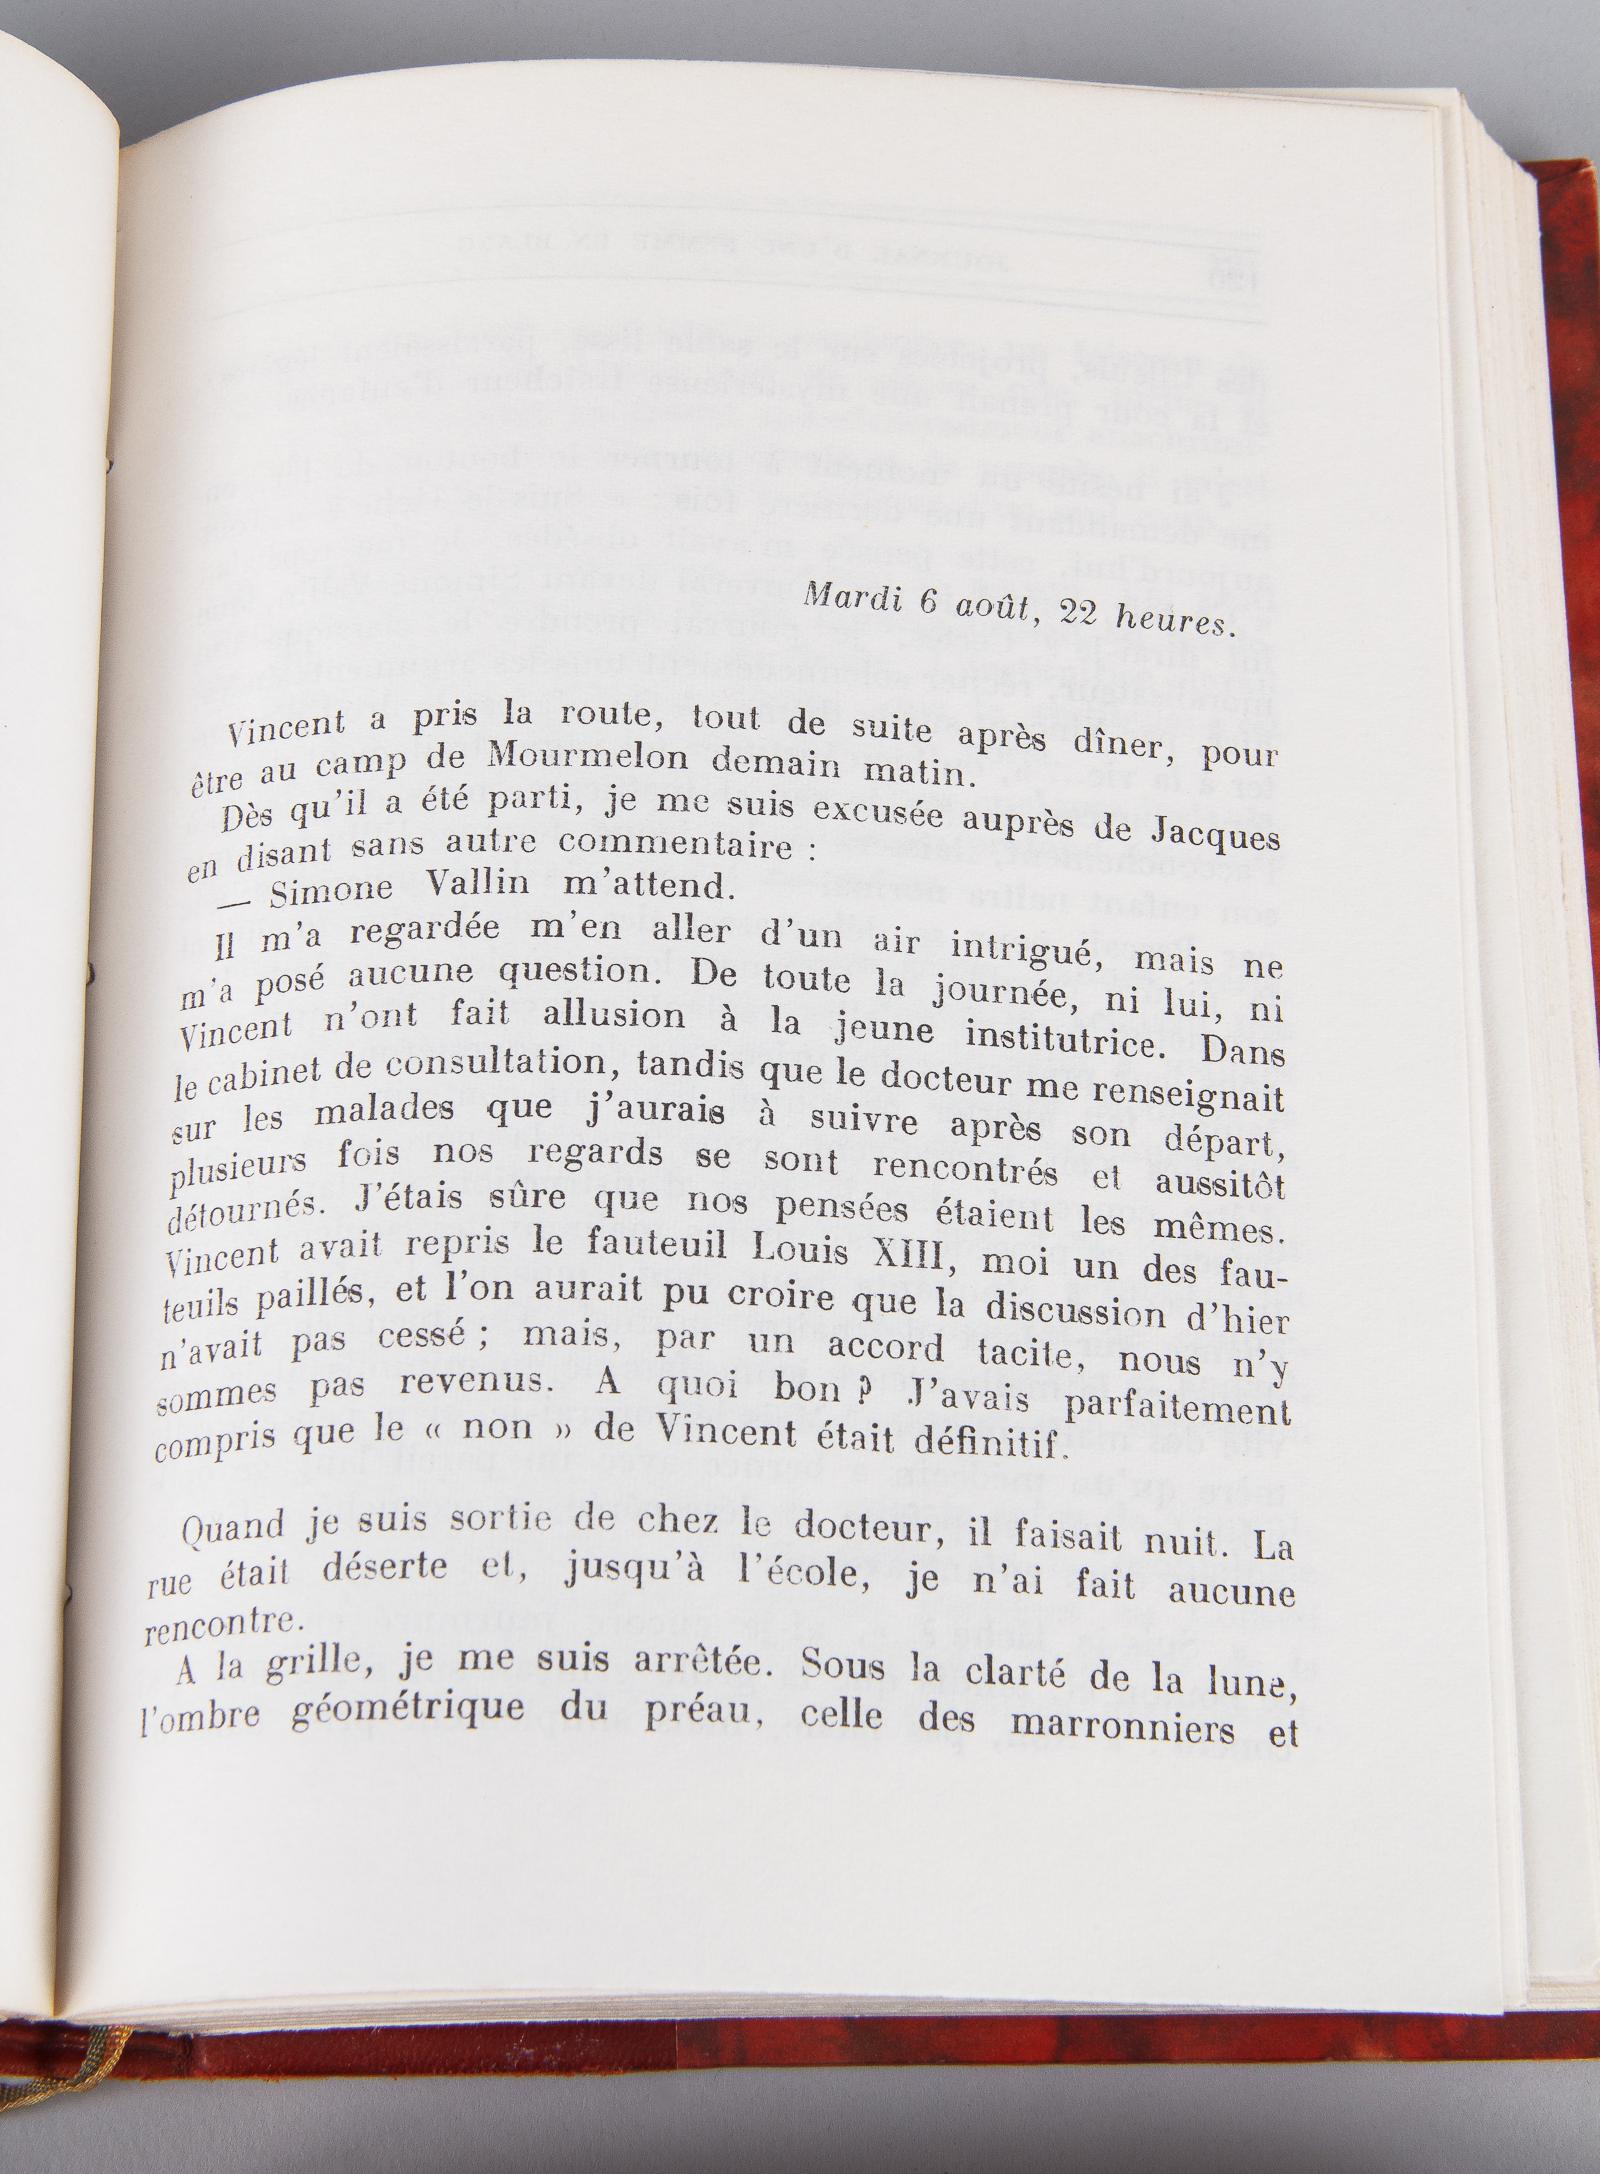 French Books, Journal d'Une Femme en Blanc by Andre Soubiran, 1964 4